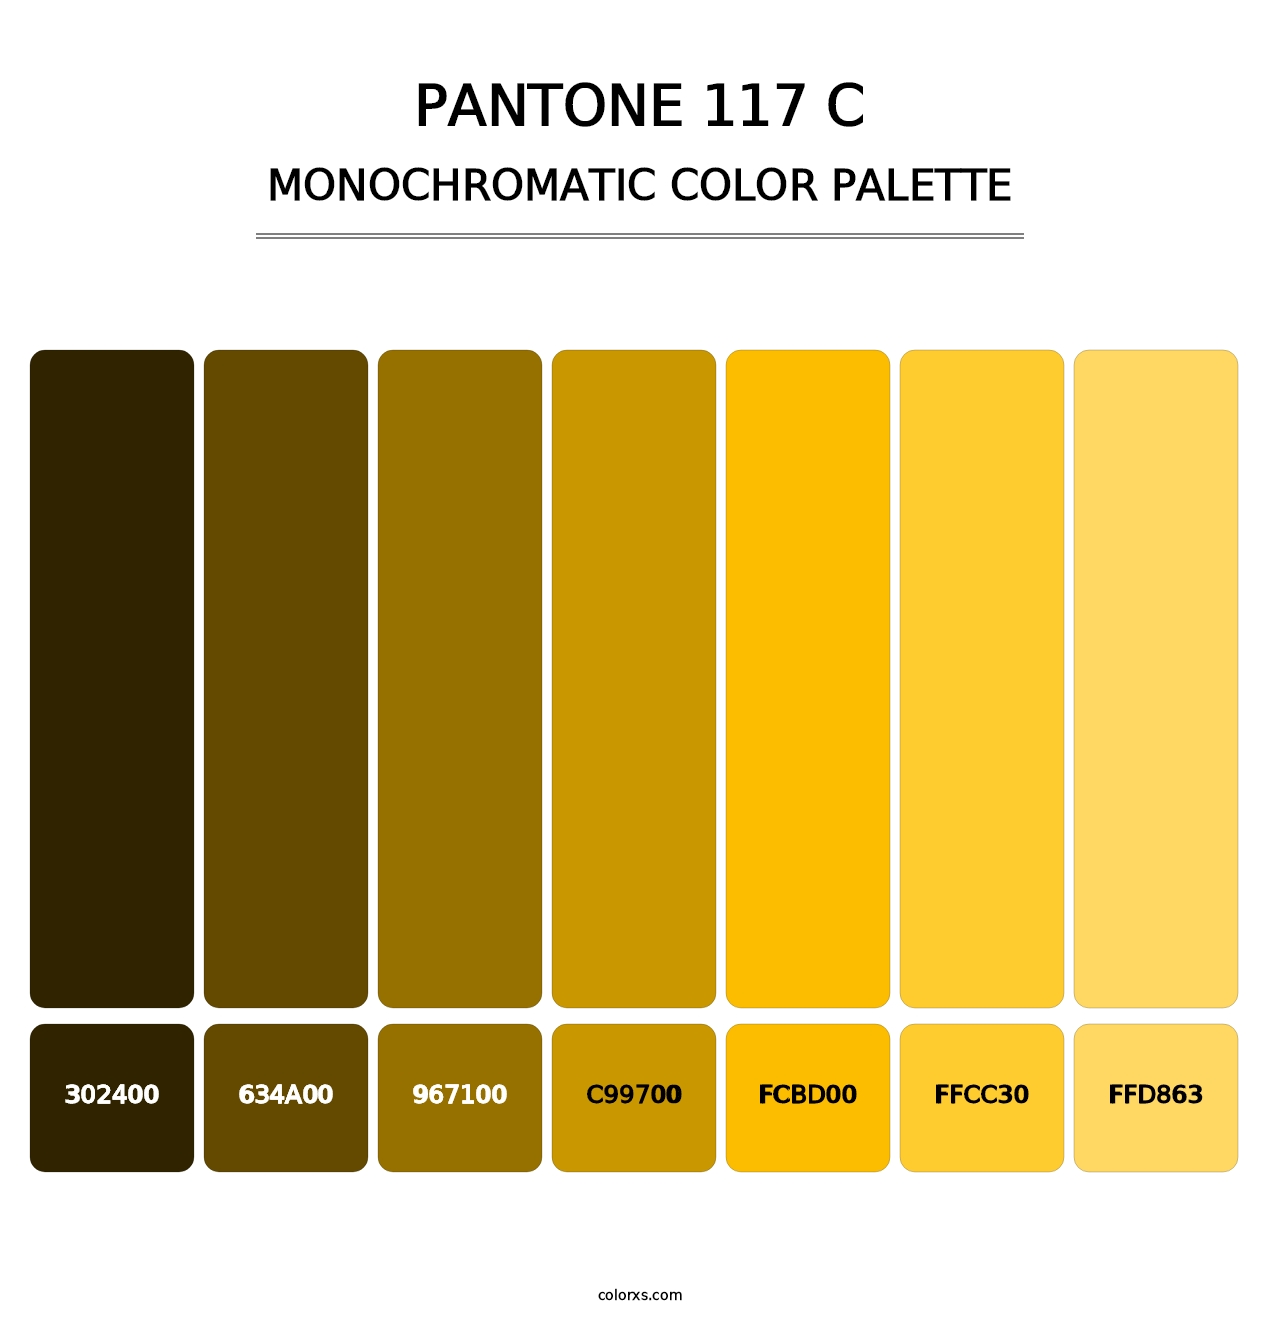 PANTONE 117 C - Monochromatic Color Palette